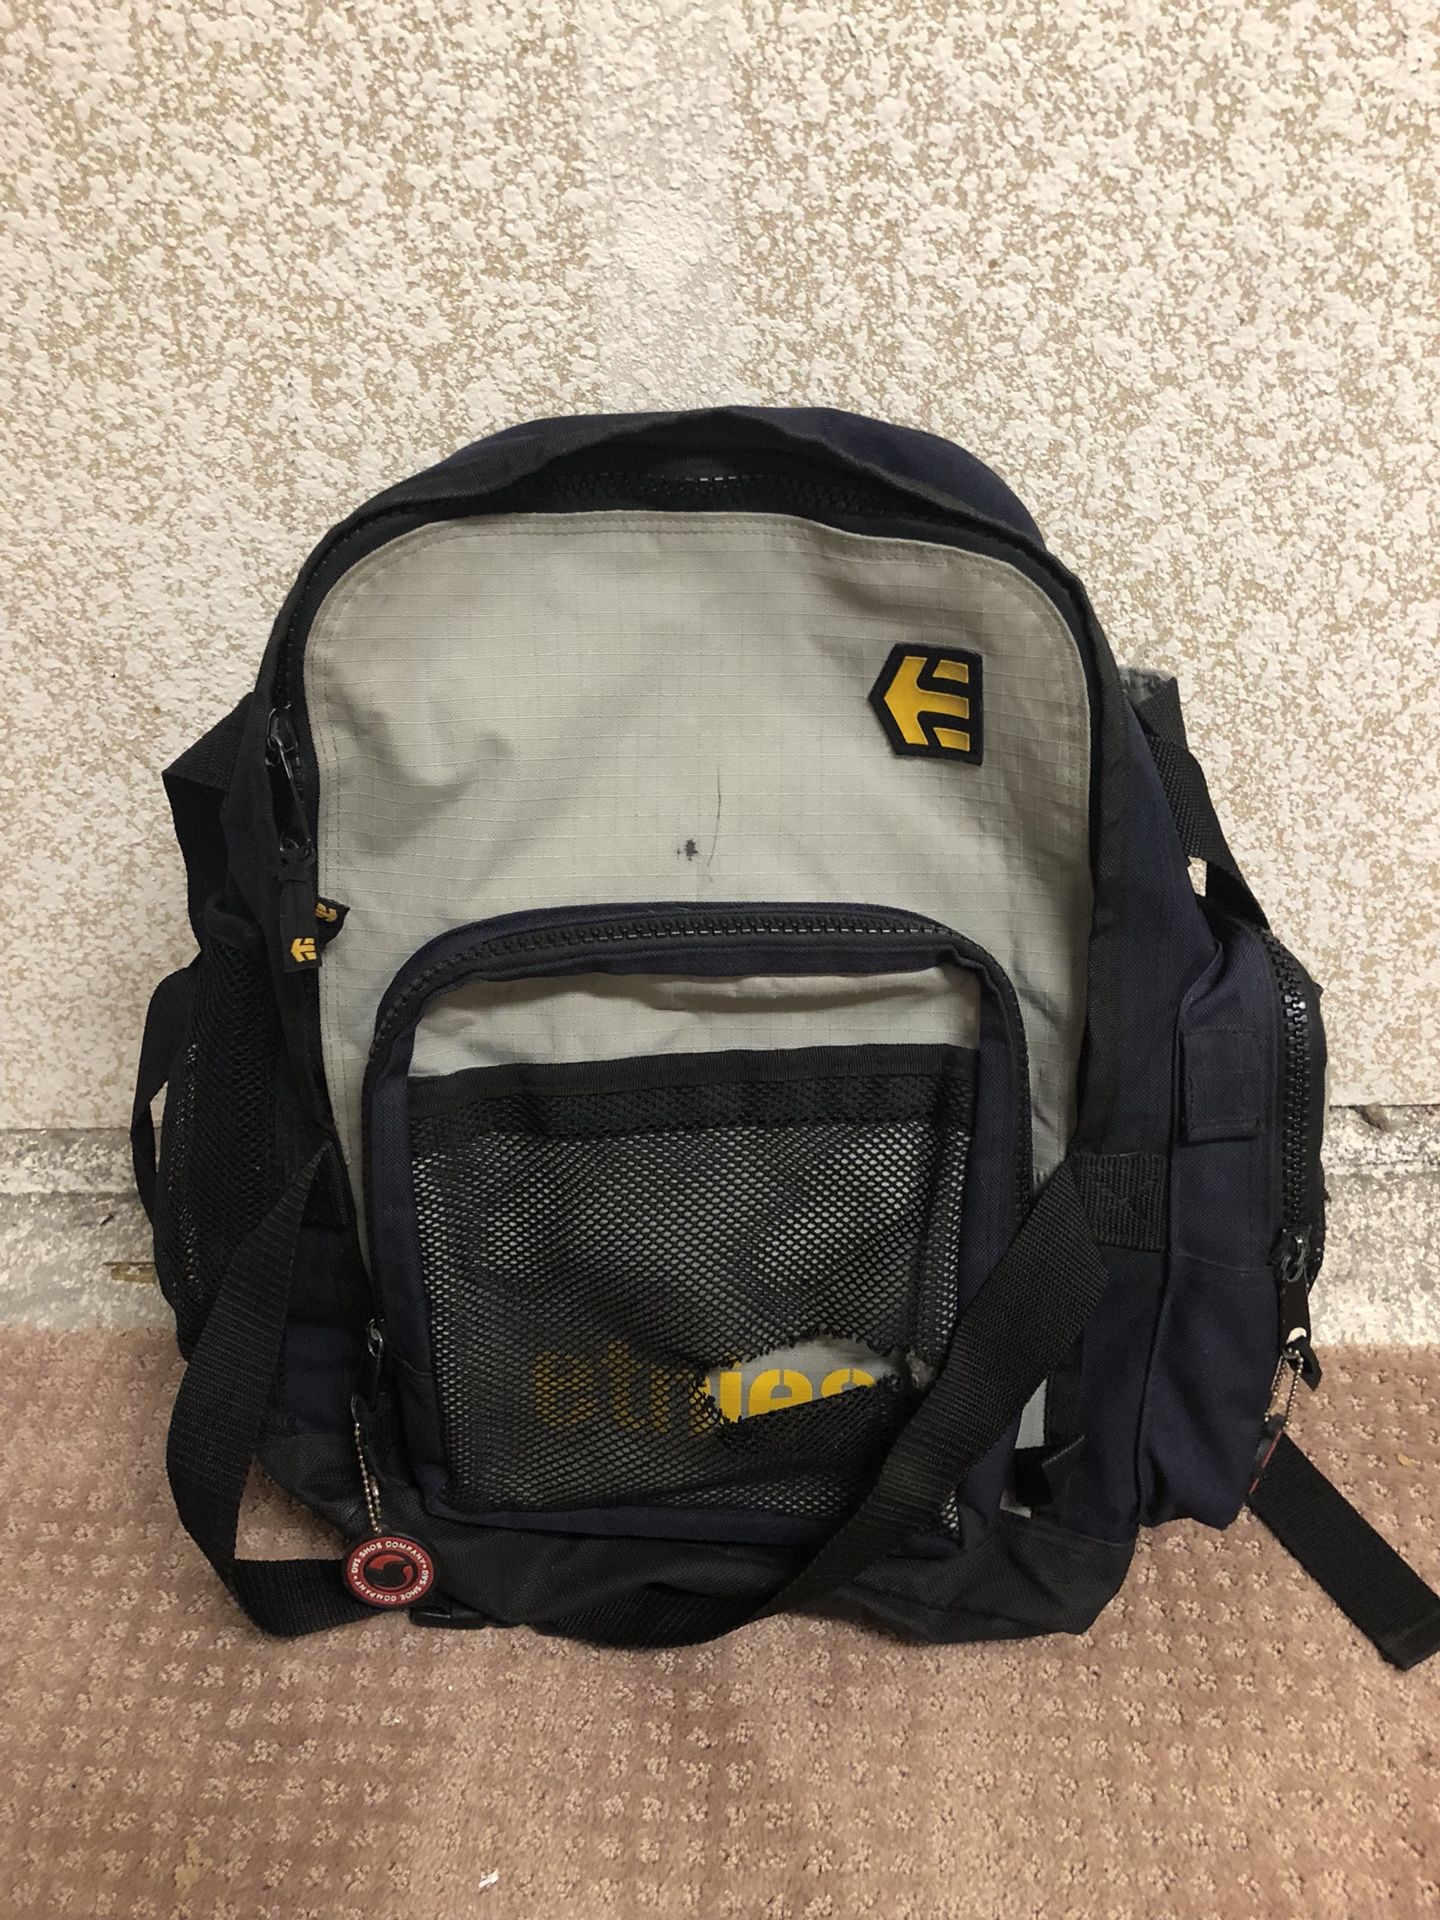 Ernie’s backpack 5 bucks